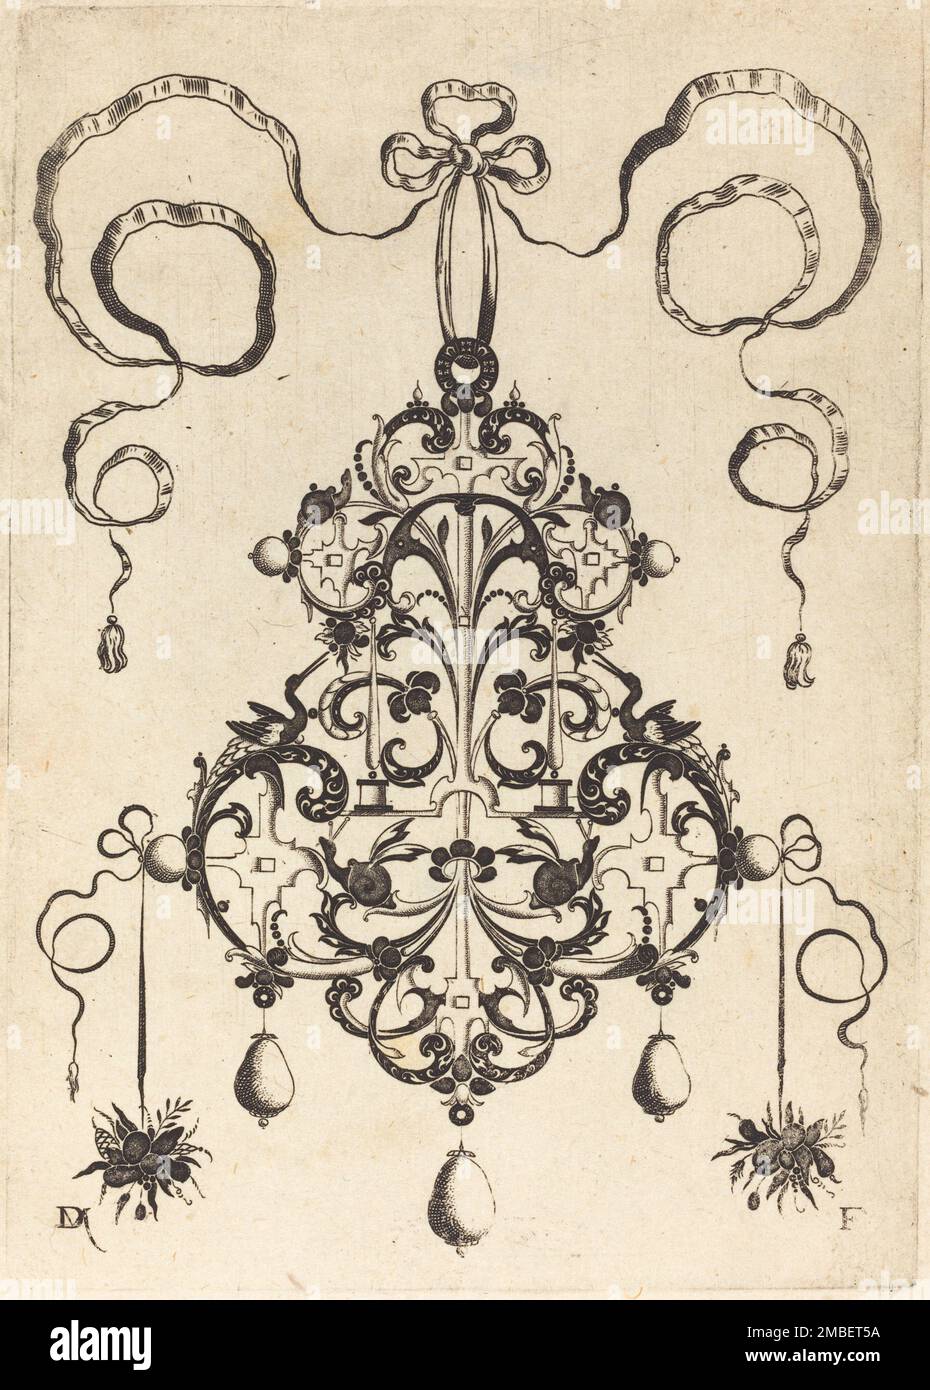 Großes Hängegehäuse, unten links und rechts zwei Stapel Gras und Obst, 1596. Stockfoto